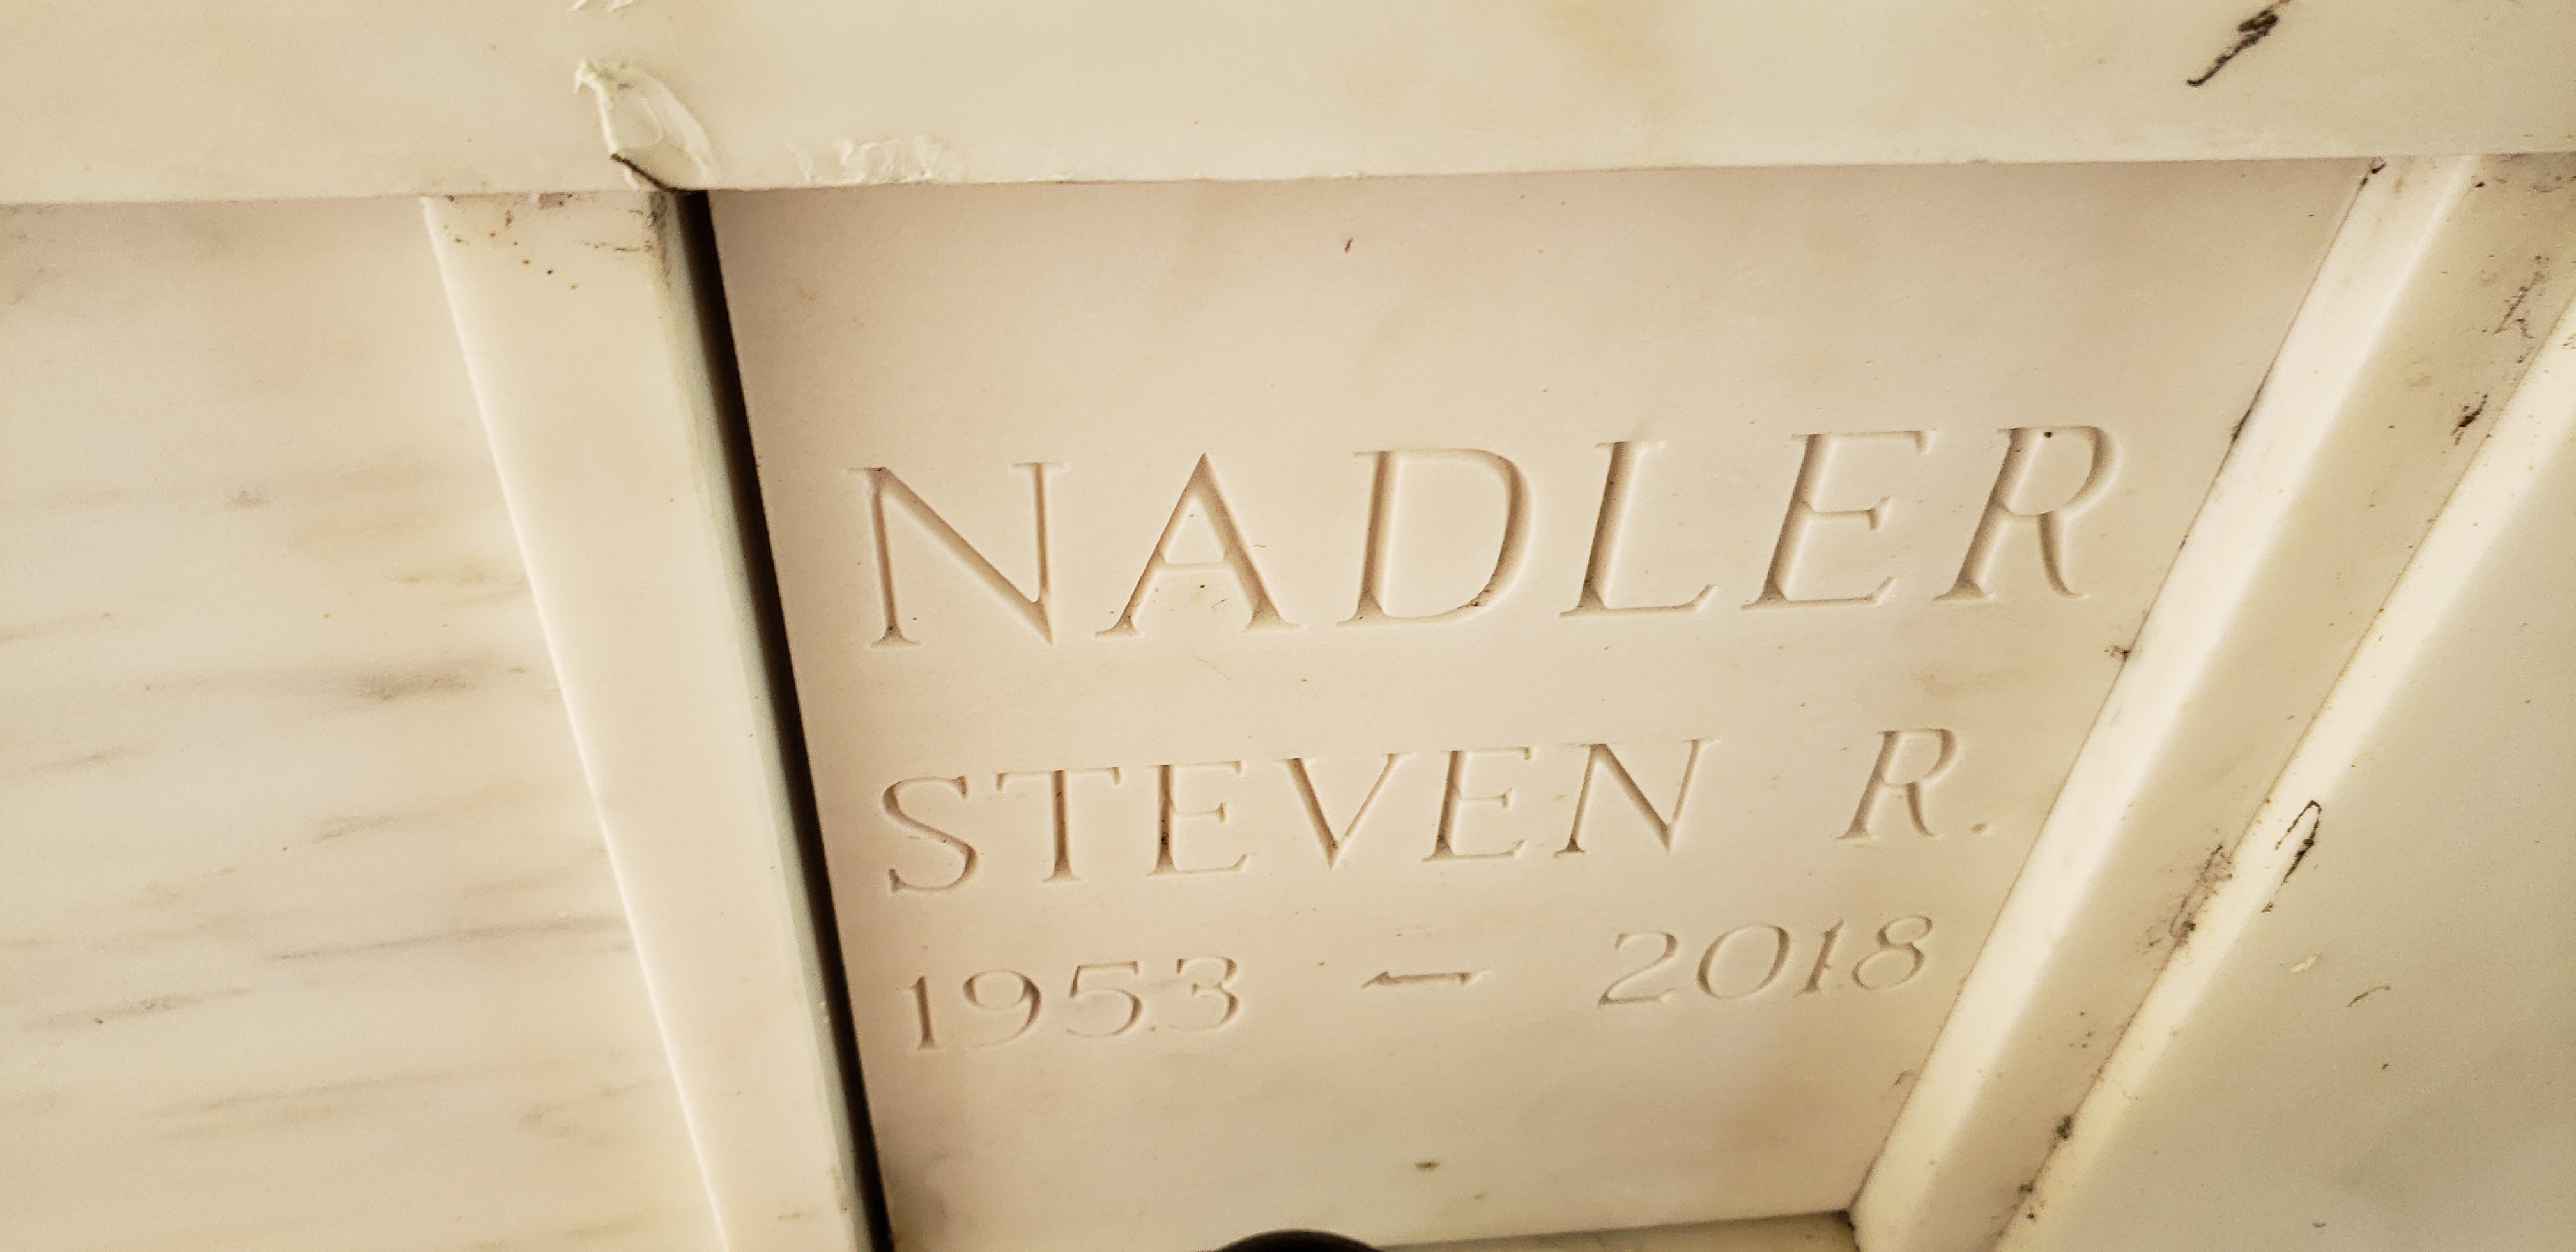 Steven R Nadler